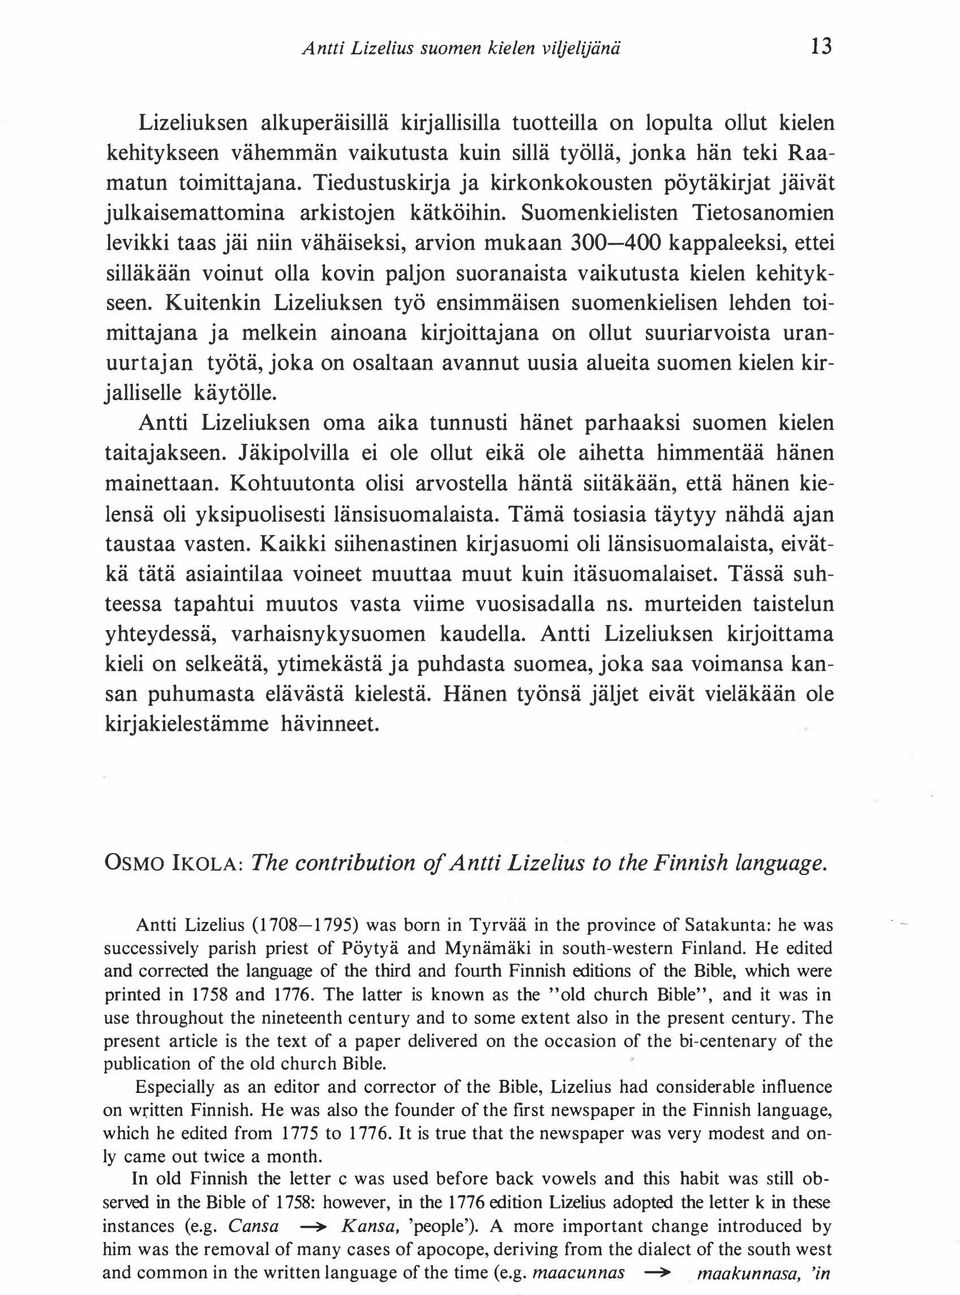 Suomenkielisten Tietosanomien levikki taas jäi niin vähäiseksi, arvion mukaan 300-400 kappaleeksi, ettei silläkään voinut olla kovin paljon suoranaista vaikutusta kielen kehitykseen.